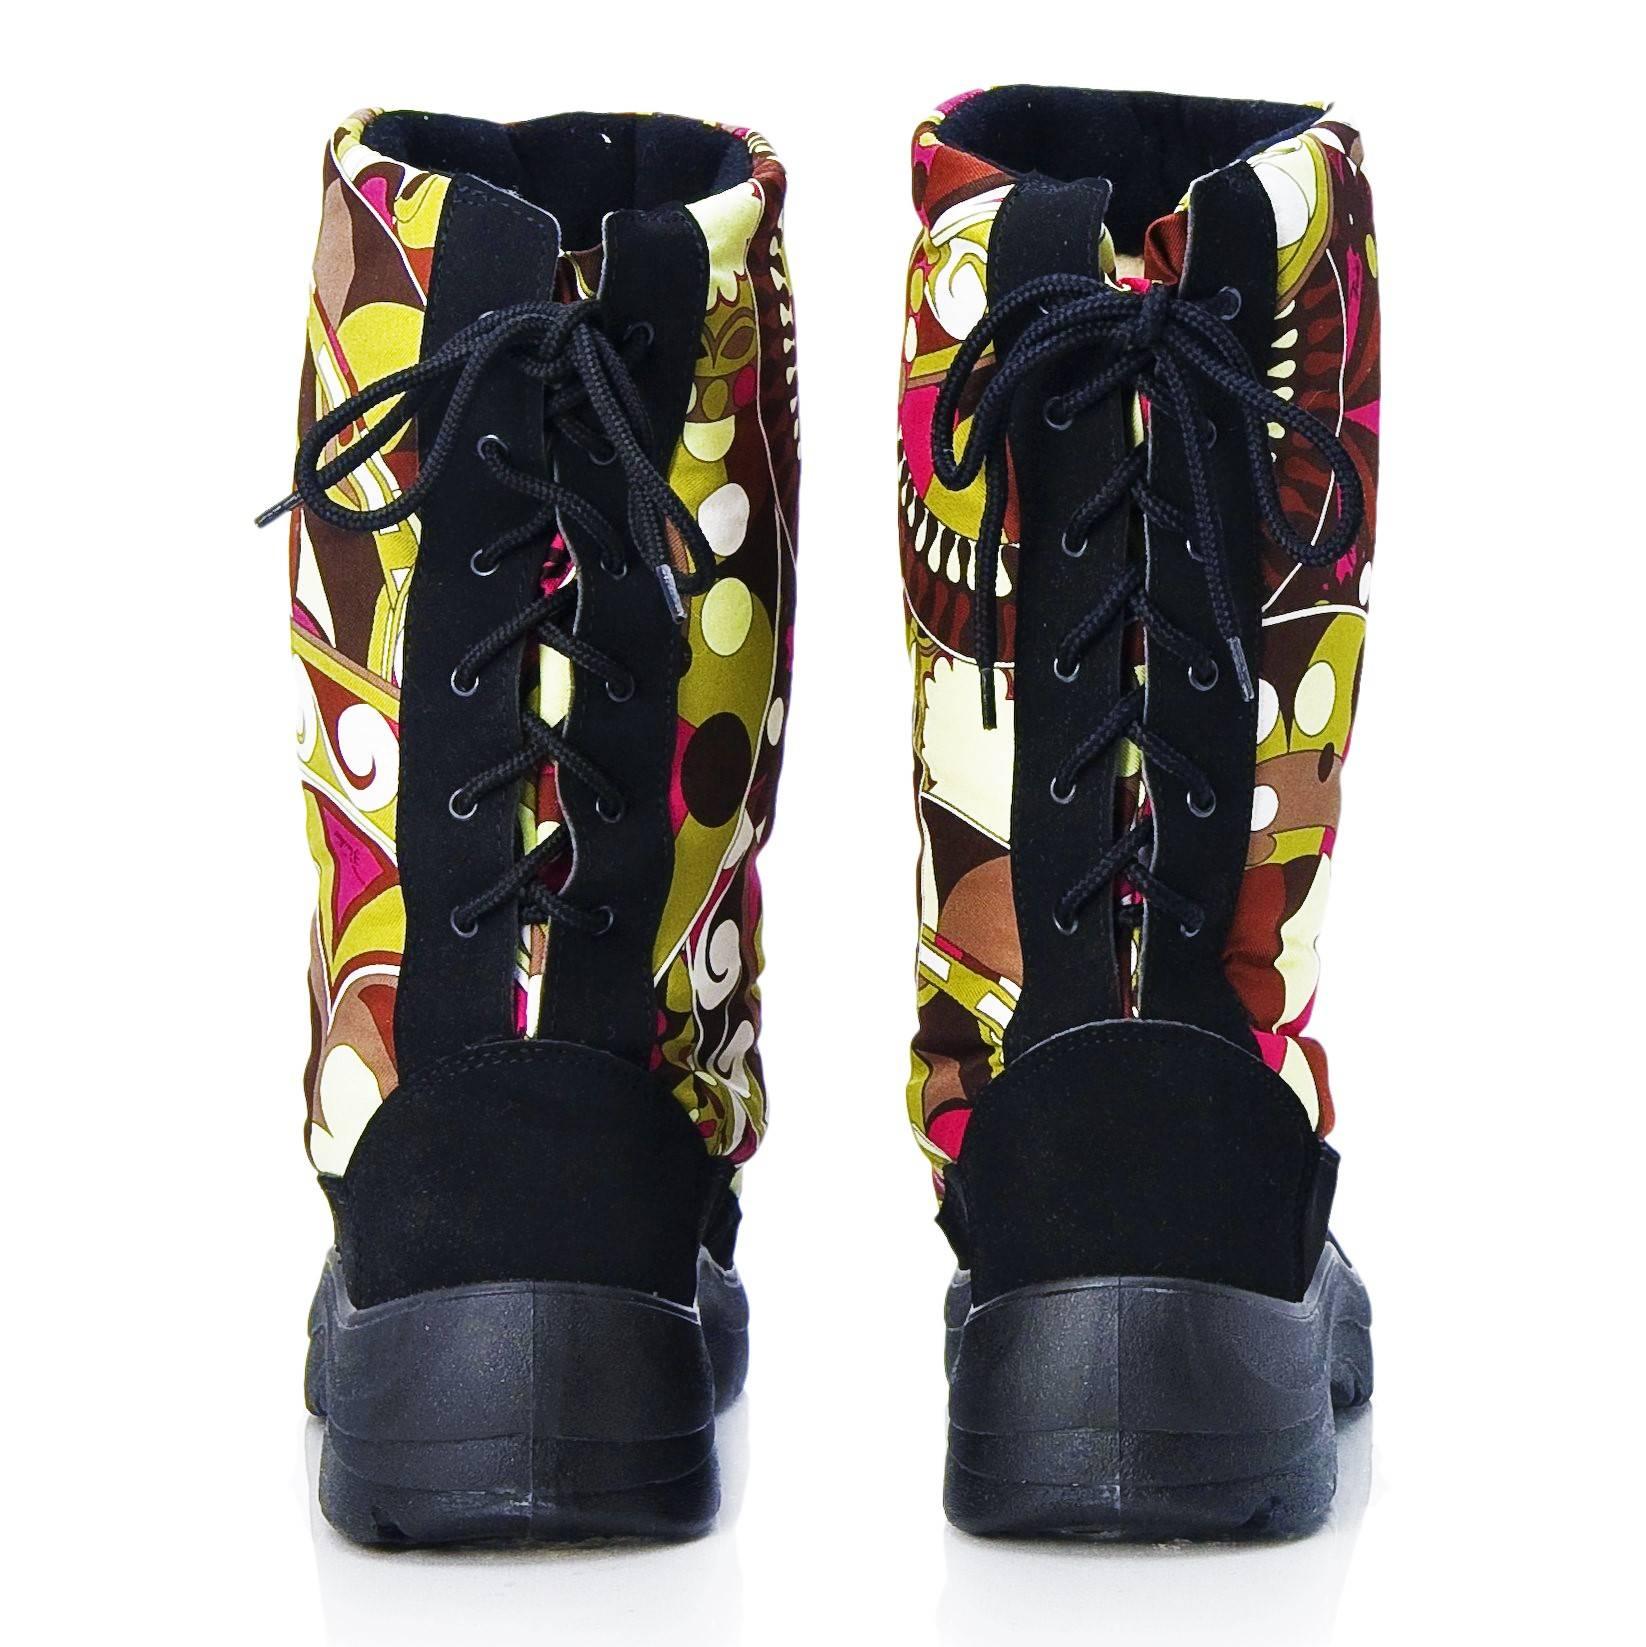 pucci rain boots